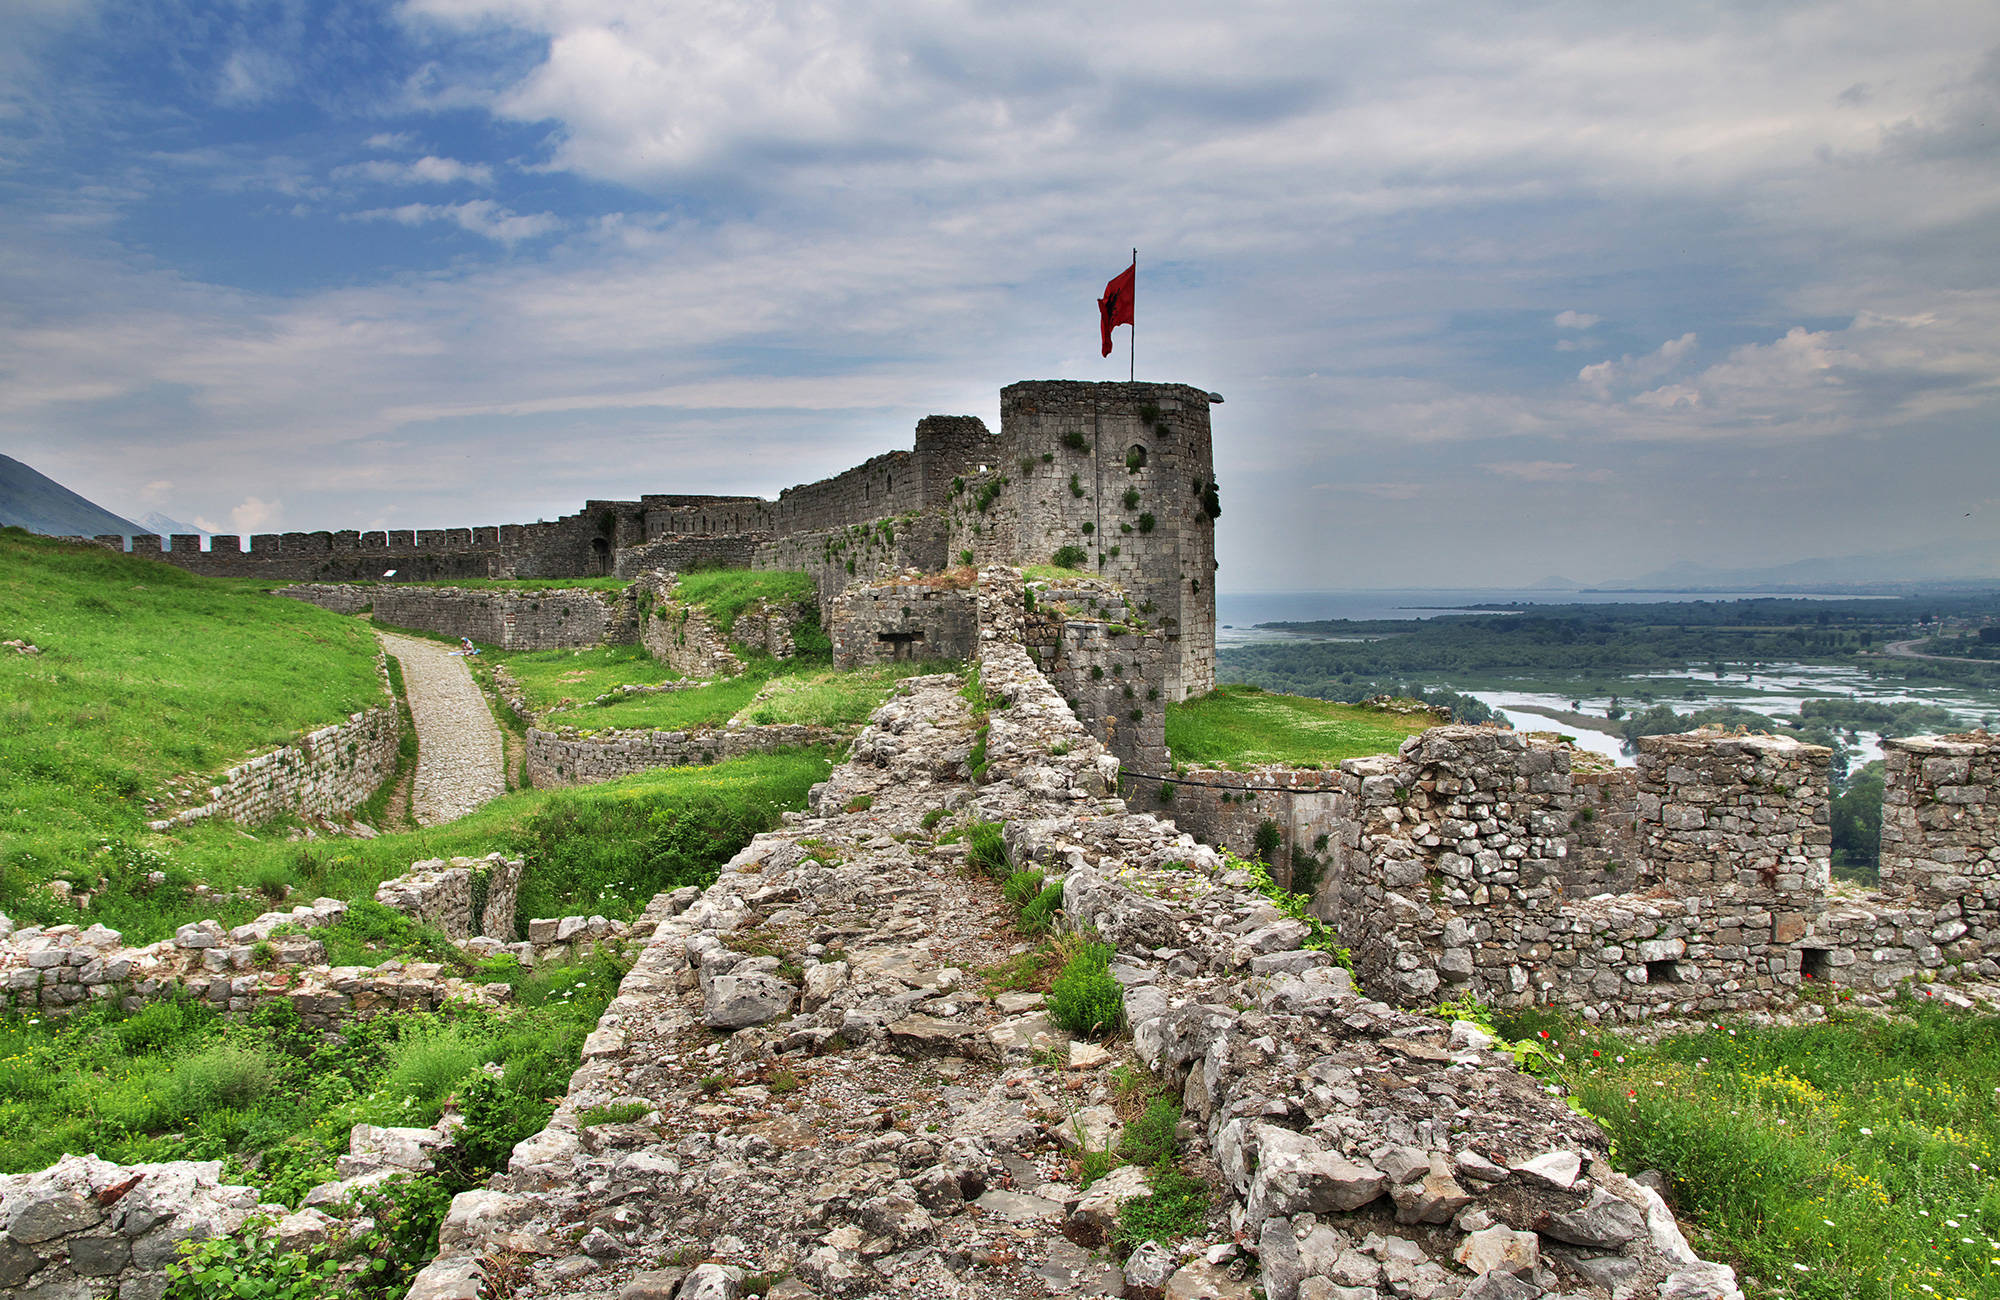 fortet i valbona nära shkodërsjön i albanien